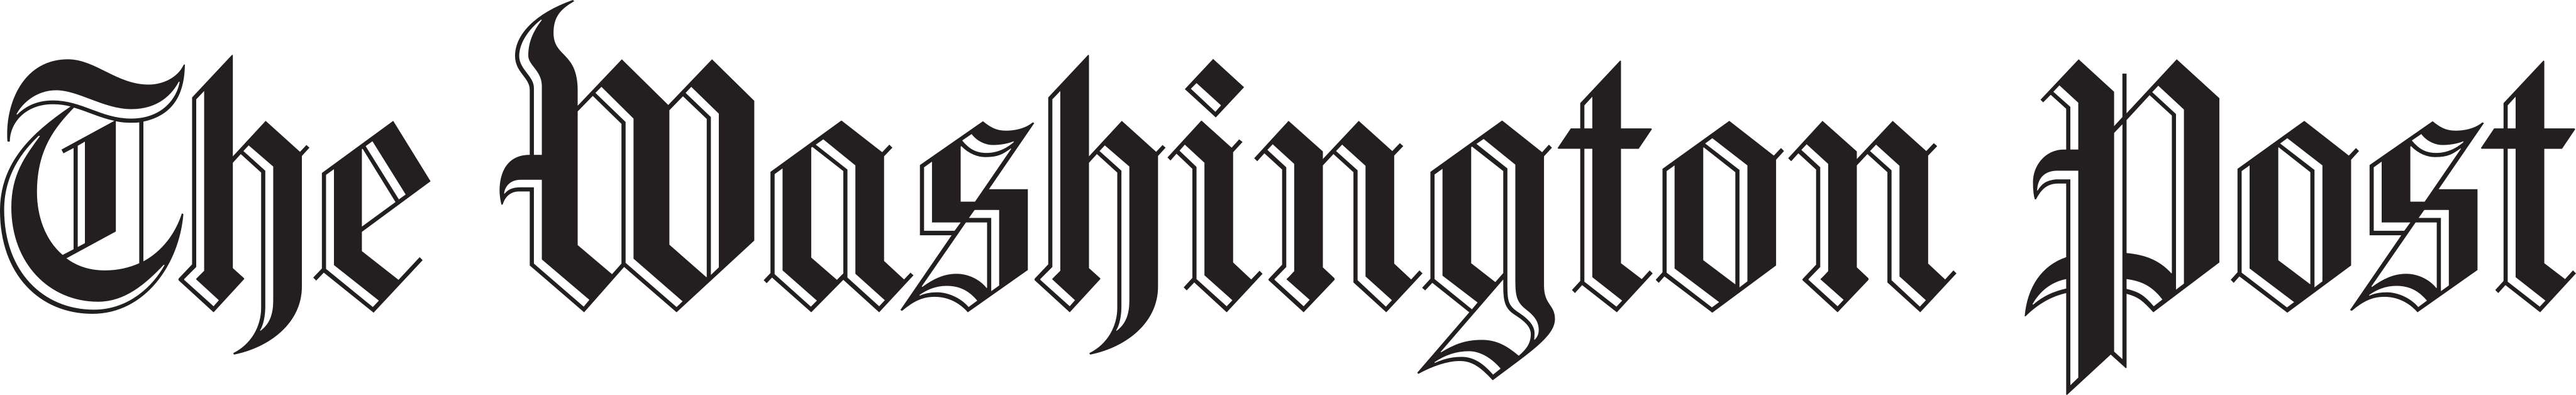 the washington post logo - The Washington Post Logo